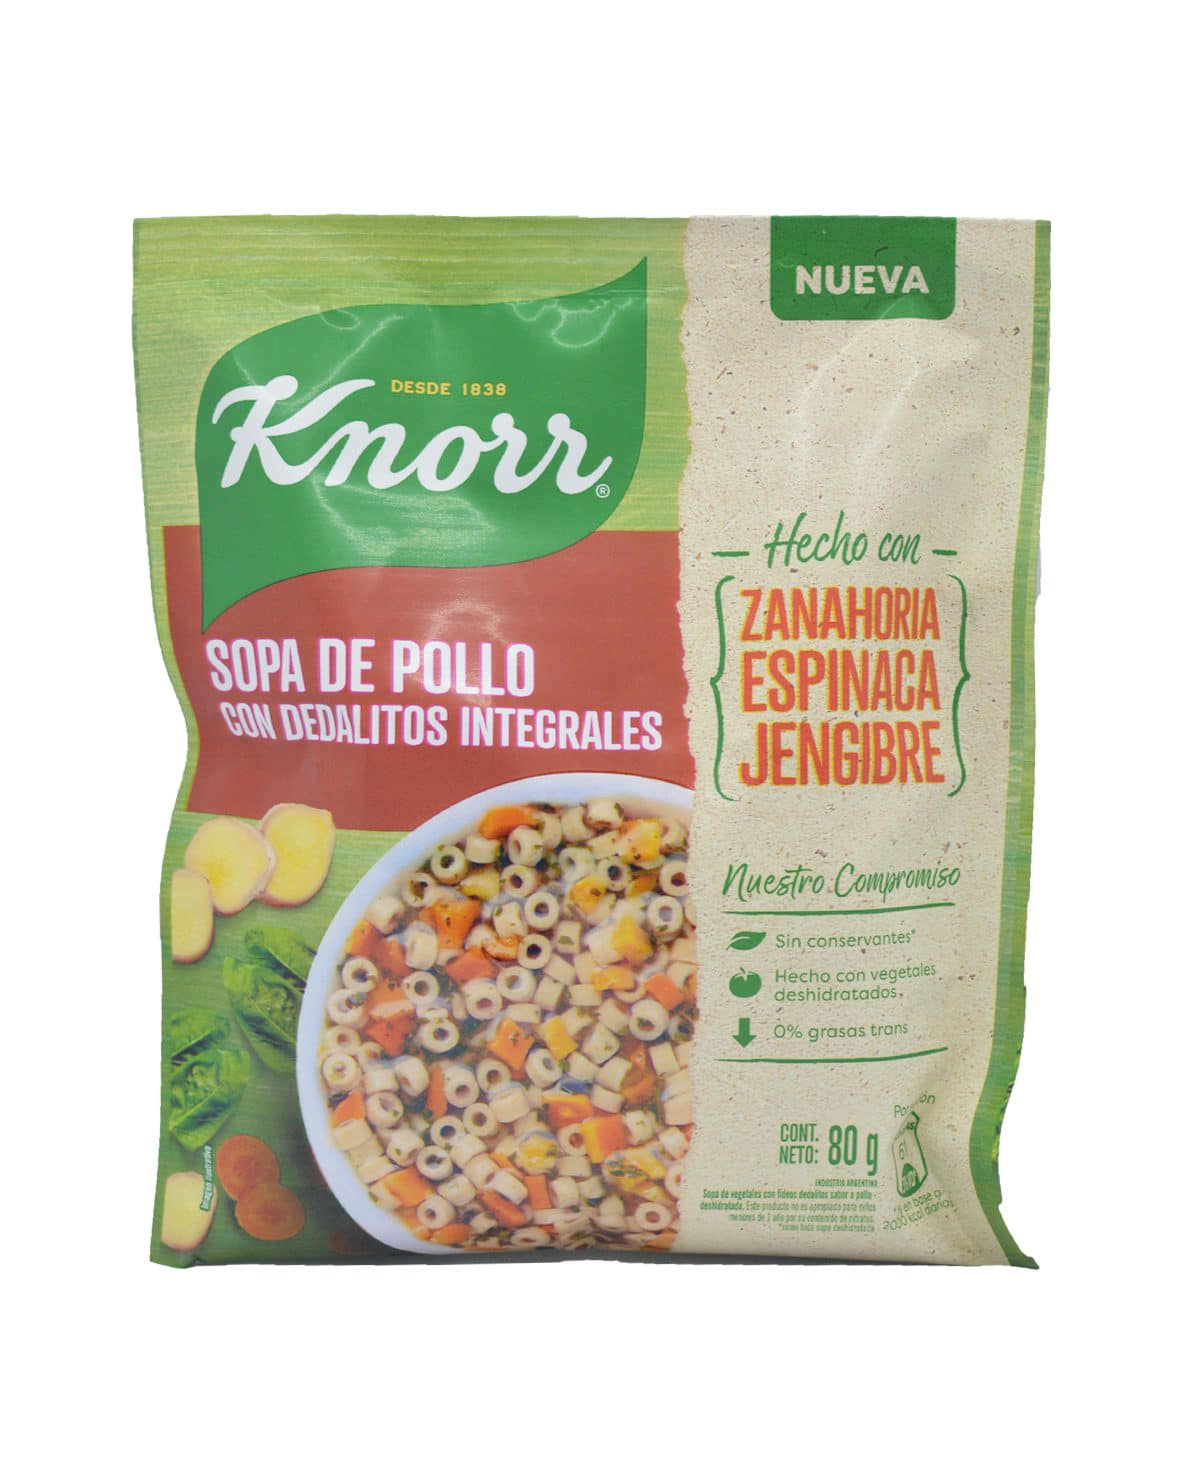 Sopa Knorr Pollo Con Dedalitos Integrales 80 Gr